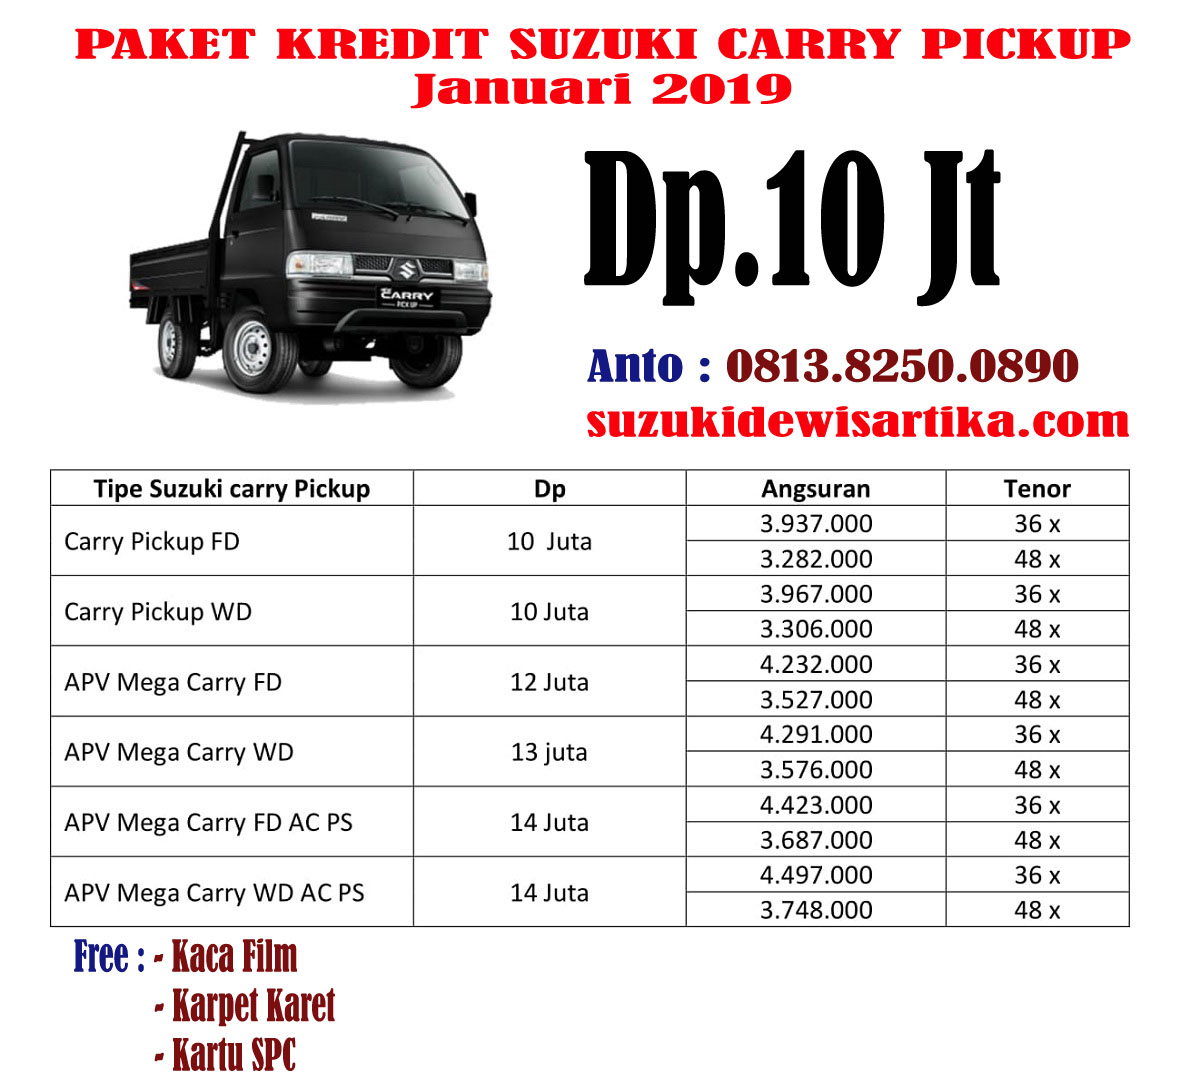 Suzuki Carry Pickup 2019 Harga Promo Dan Paket Kredit Dp Dan Angsuran Murah Dan Ringan Harga Suzuki Ertiga Dp 15 Juta Promo Suzuki Ertiga Paket Kredit Suzuki Ertiga Terbaru 2021 Promo Suzuki Xl7